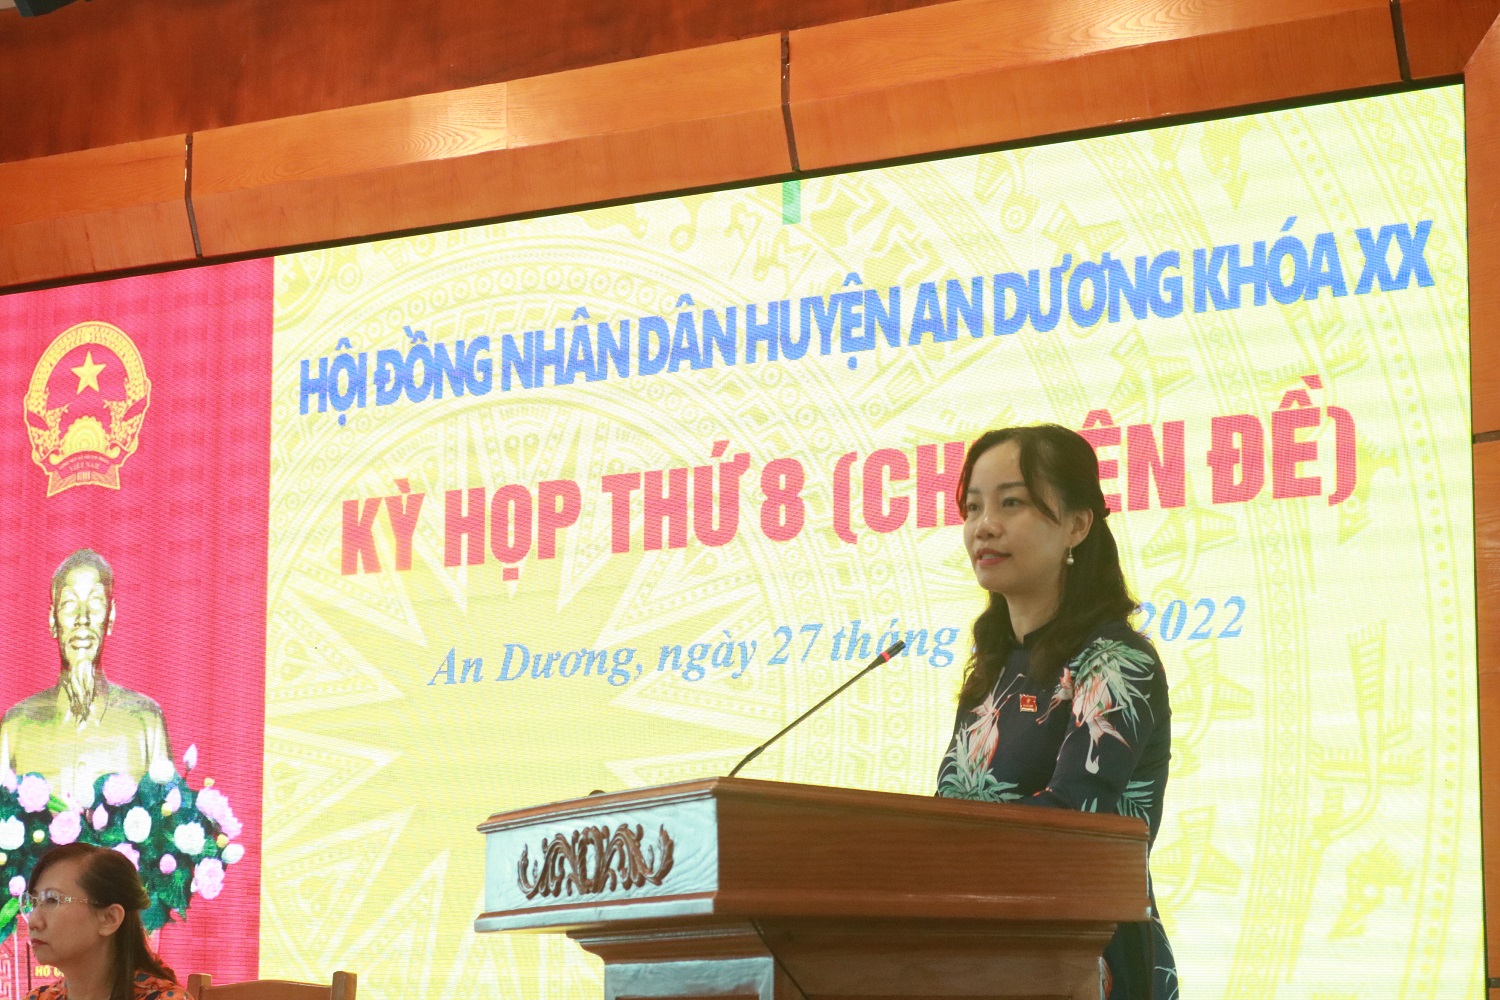 Đồng chí Trần Thị Quỳnh Trang, Ủy viên Thành ủy, Bí thư Huyện ủy An Dương phát biểu tại kỳ họp